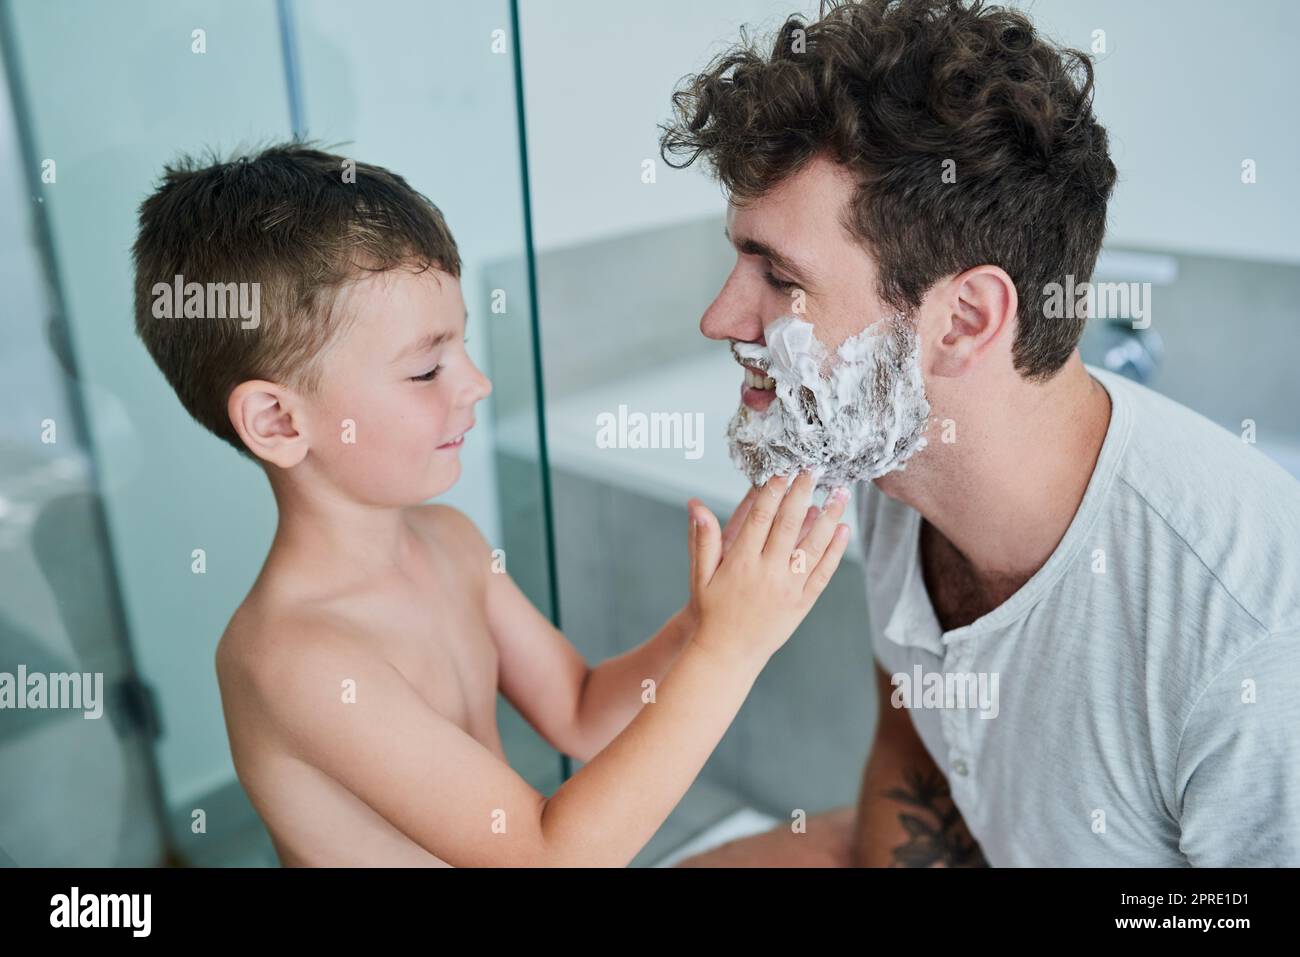 La barba è così cara papà: Un ragazzino che si strofinava la crema per rasare il viso dei padri nel bagno di casa. Foto Stock